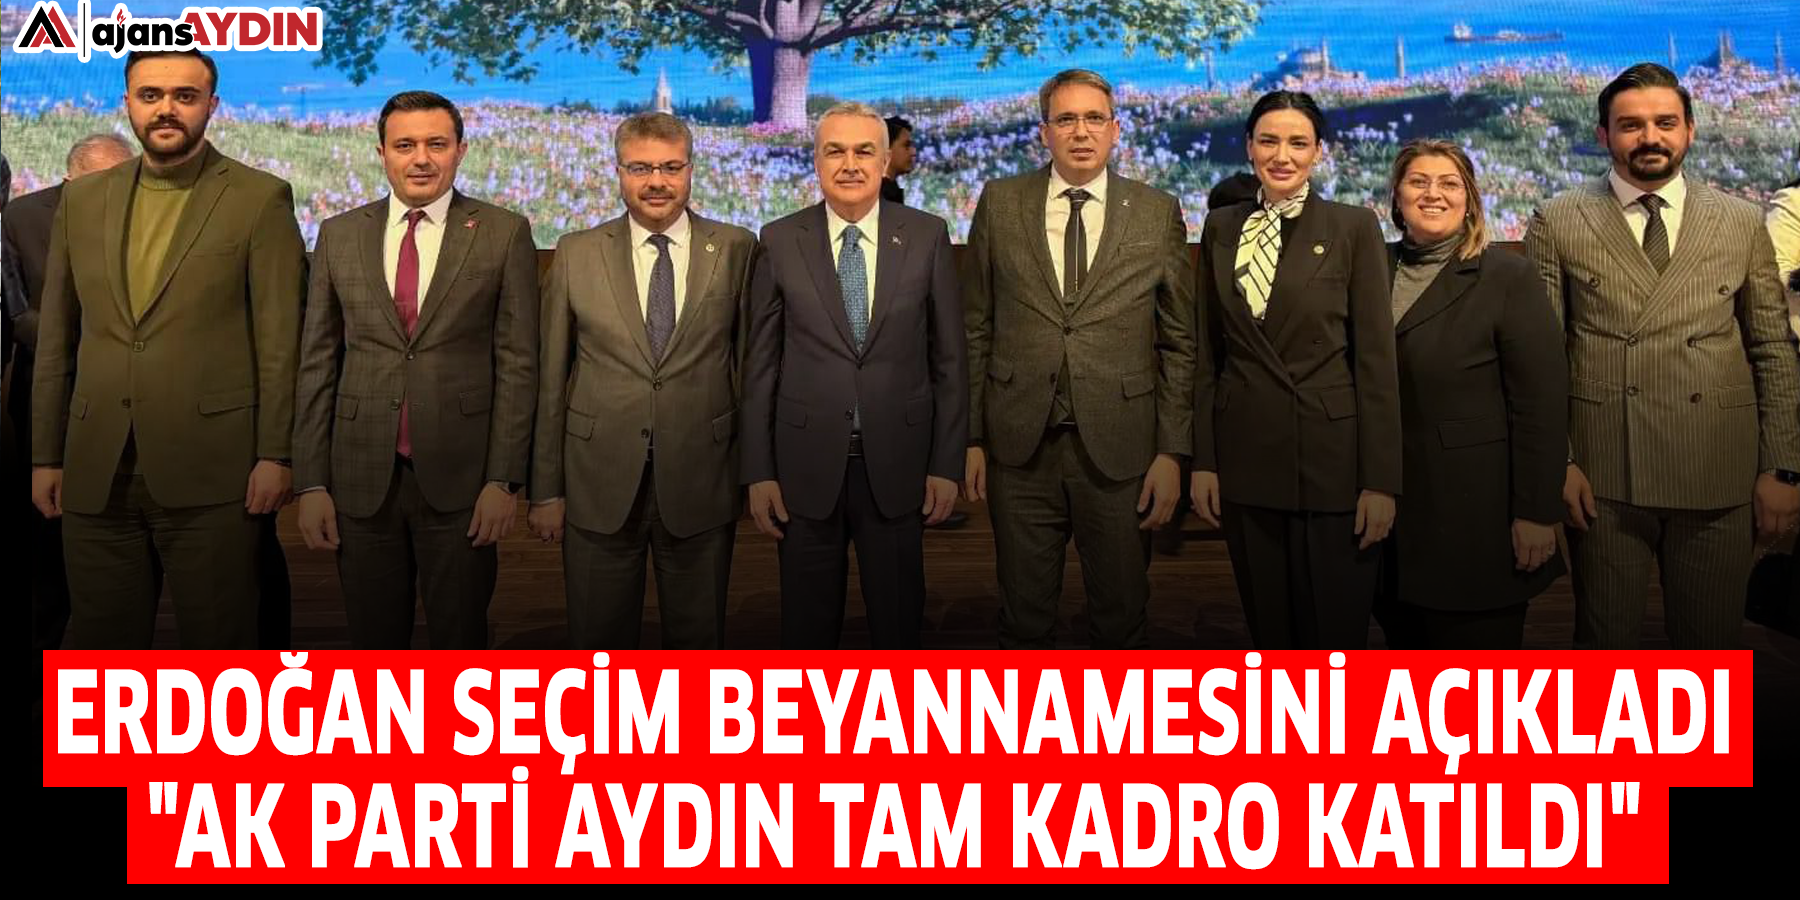 Erdoğan seçim beyannamesini açıkladı: "AK Parti Aydın tam kadro katıldı"